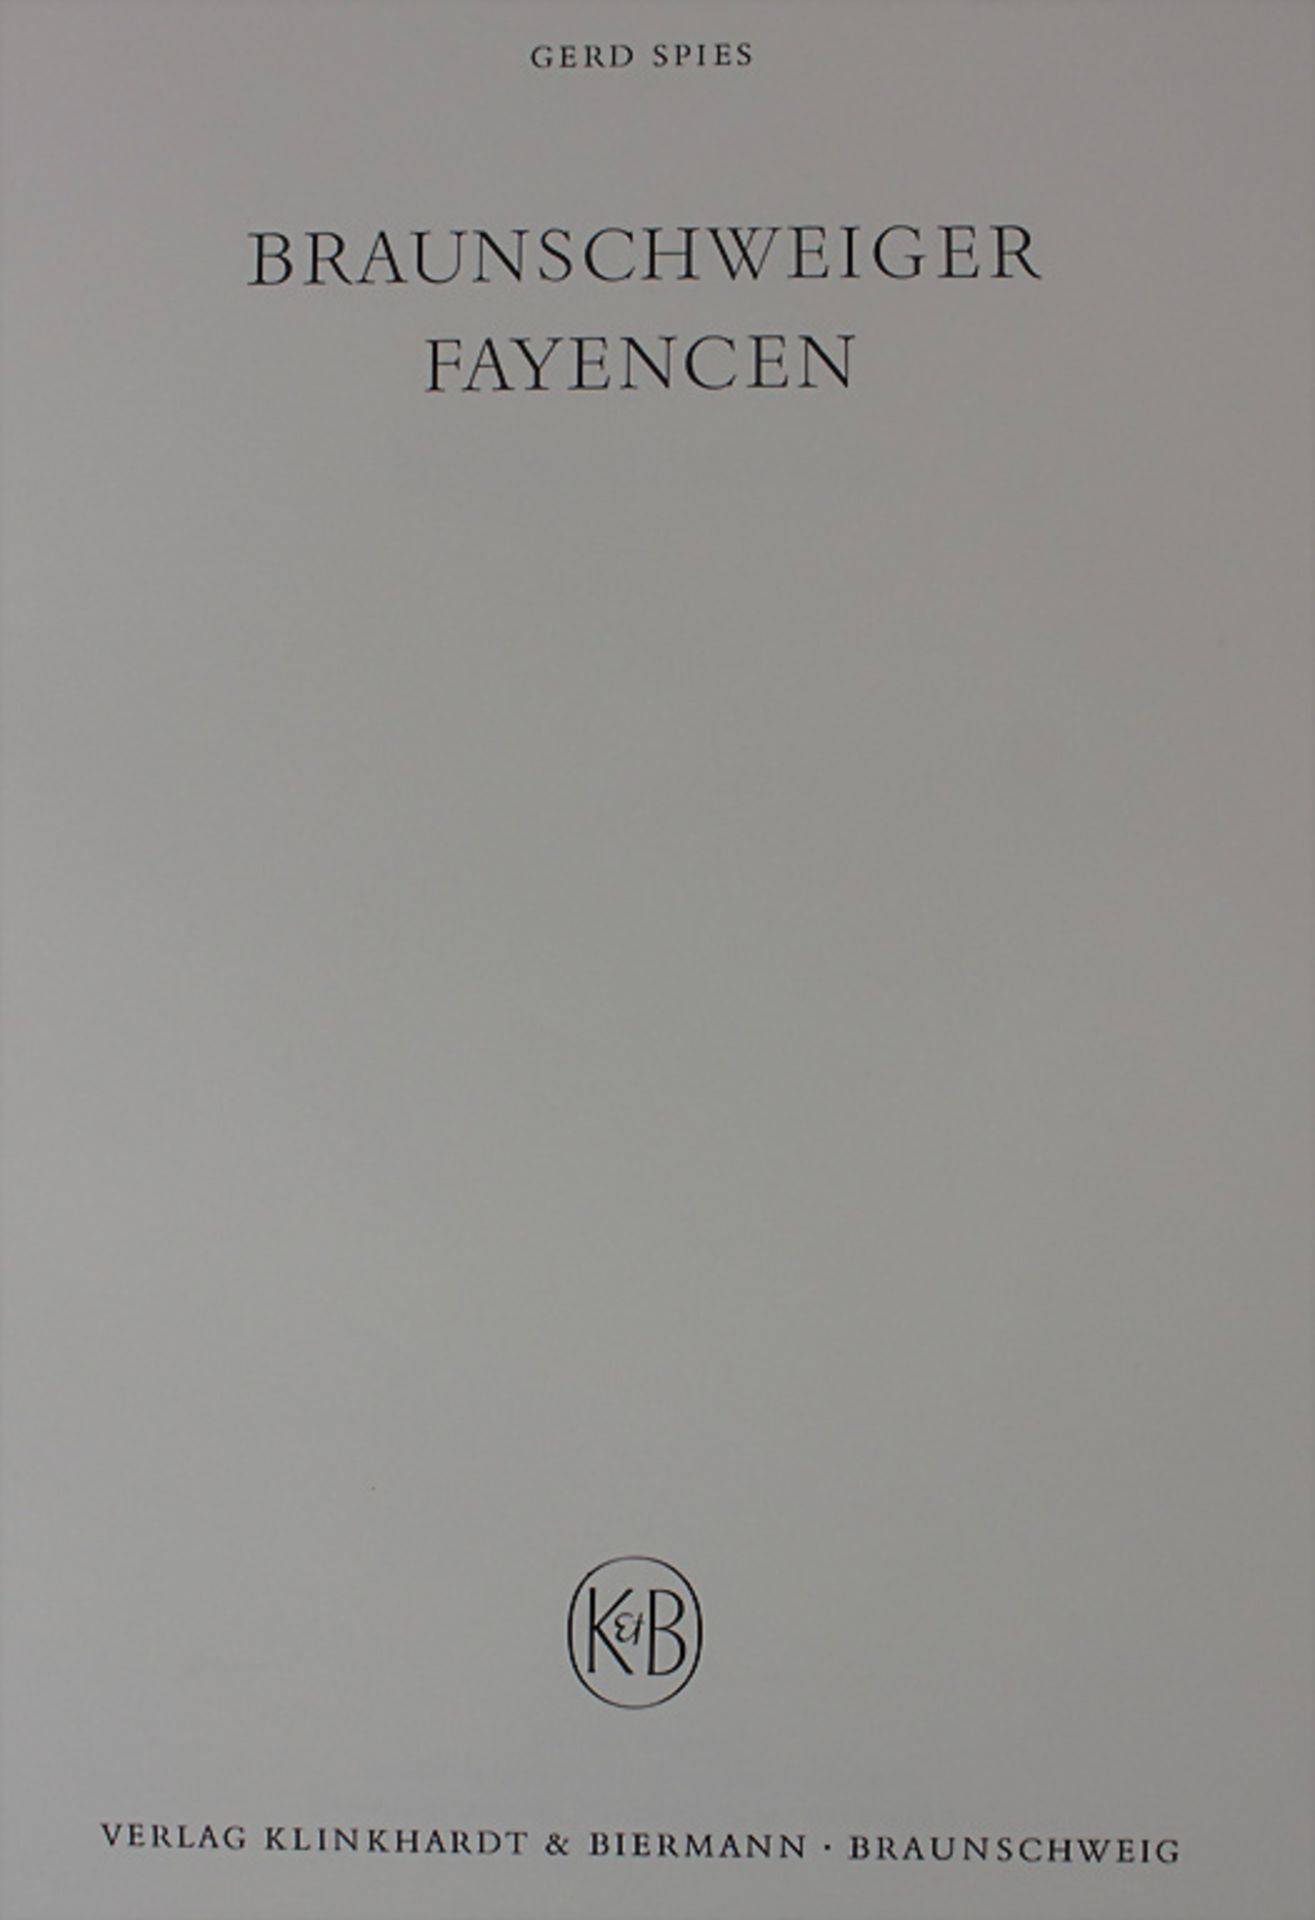 Gerd Spies: 'Braunschweiger Fayencen', Braunschweig, 1971 - Image 2 of 3